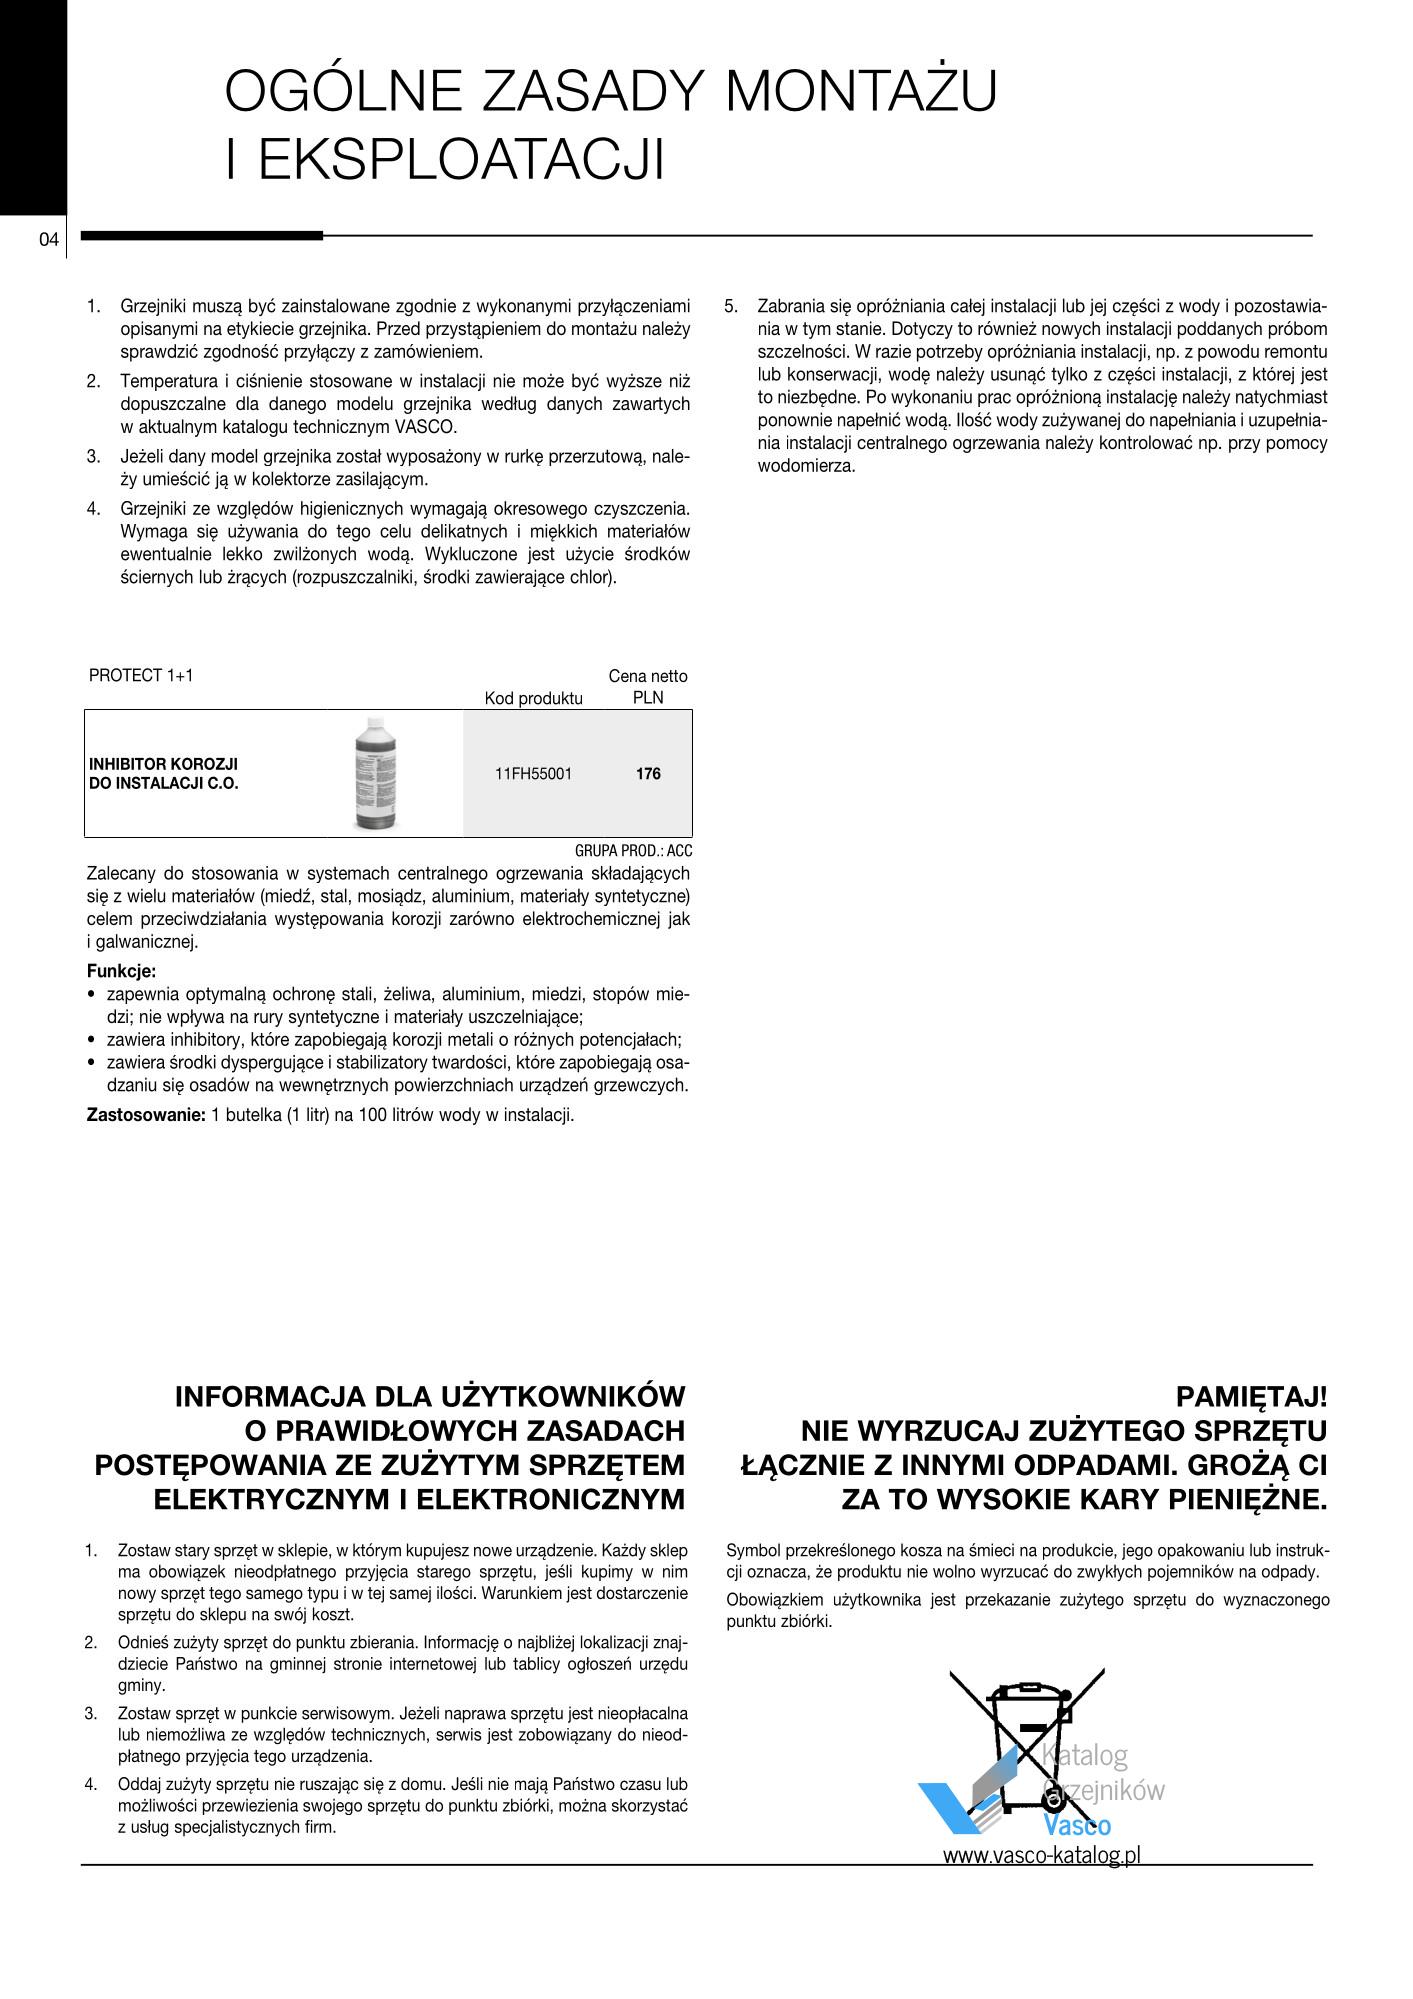 Katalog Vasco 2021 - informacje